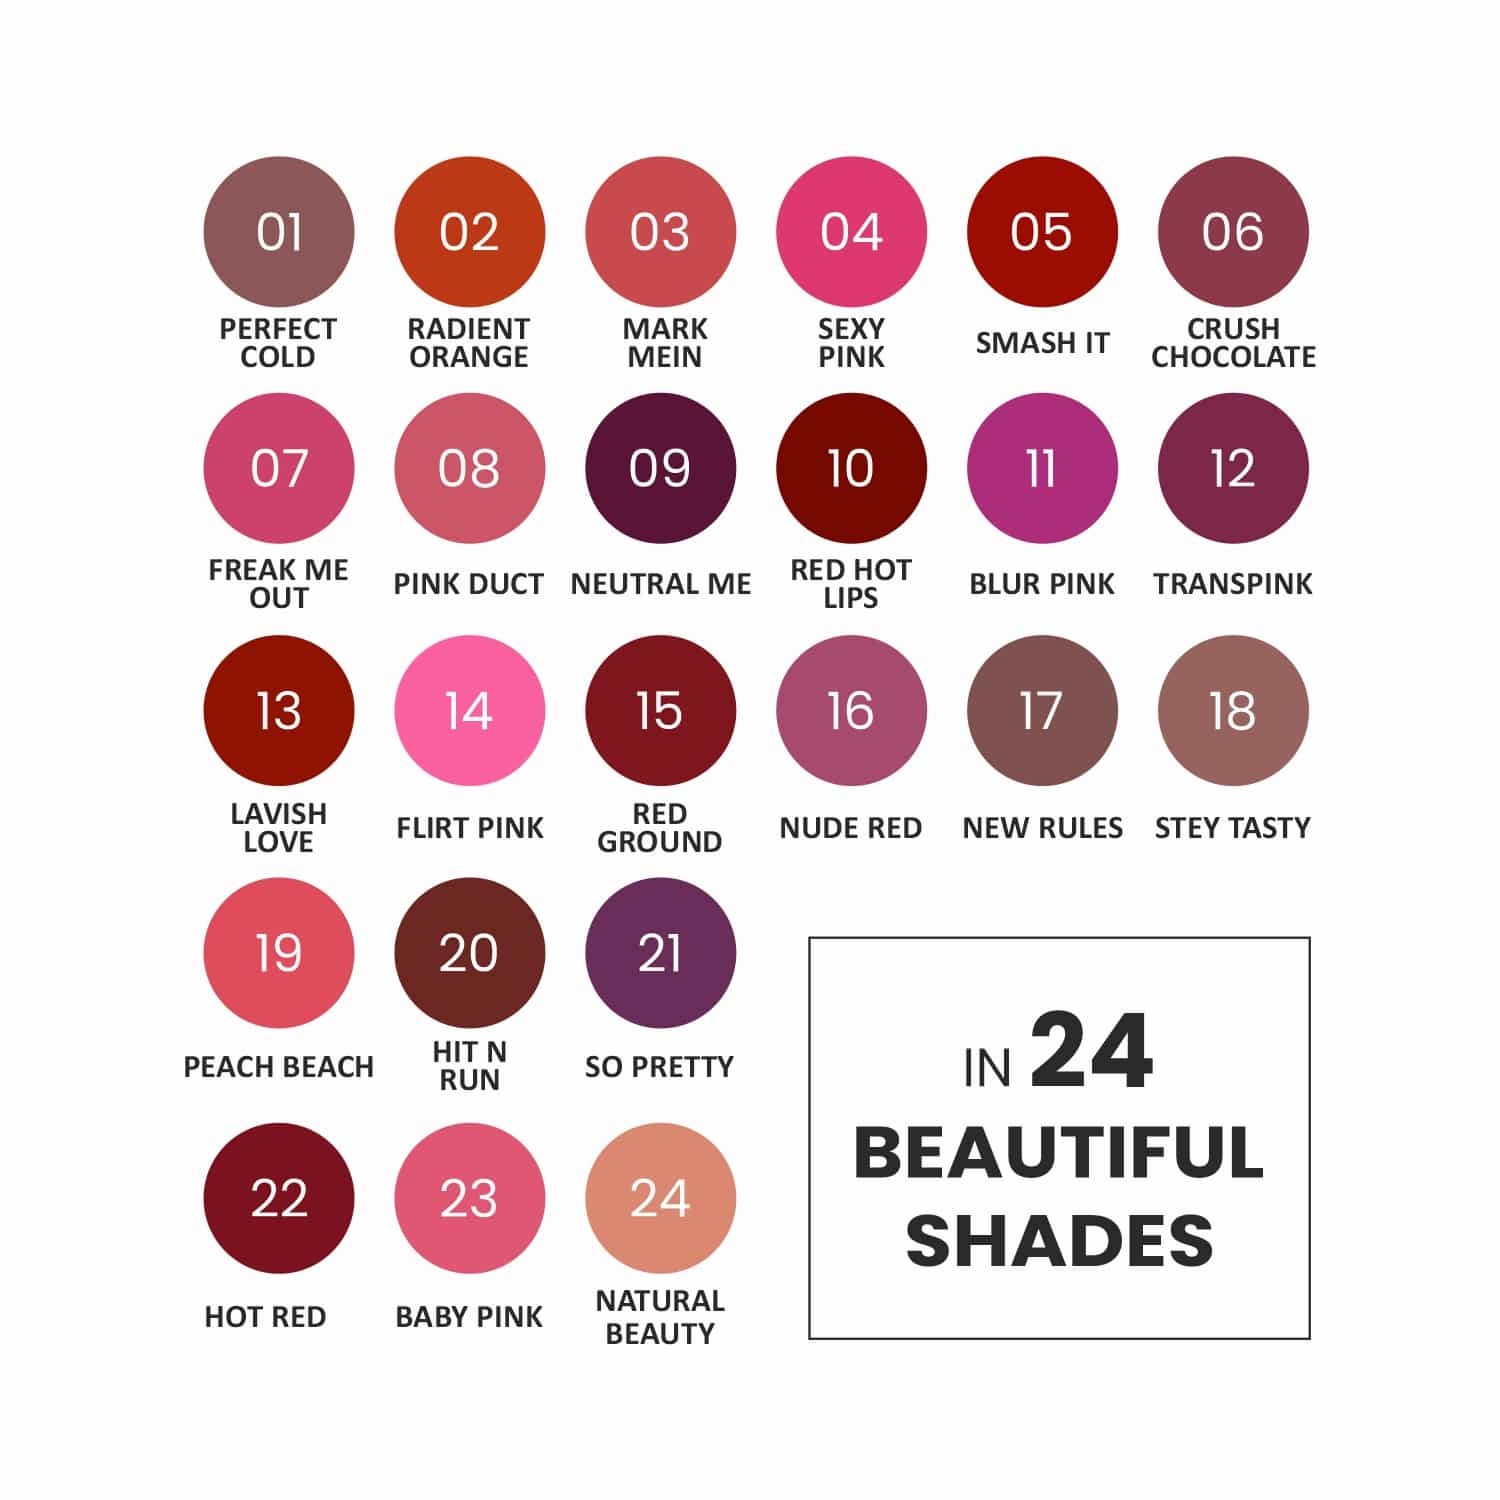 Wow Matte Lipstick - 21 So Pretty